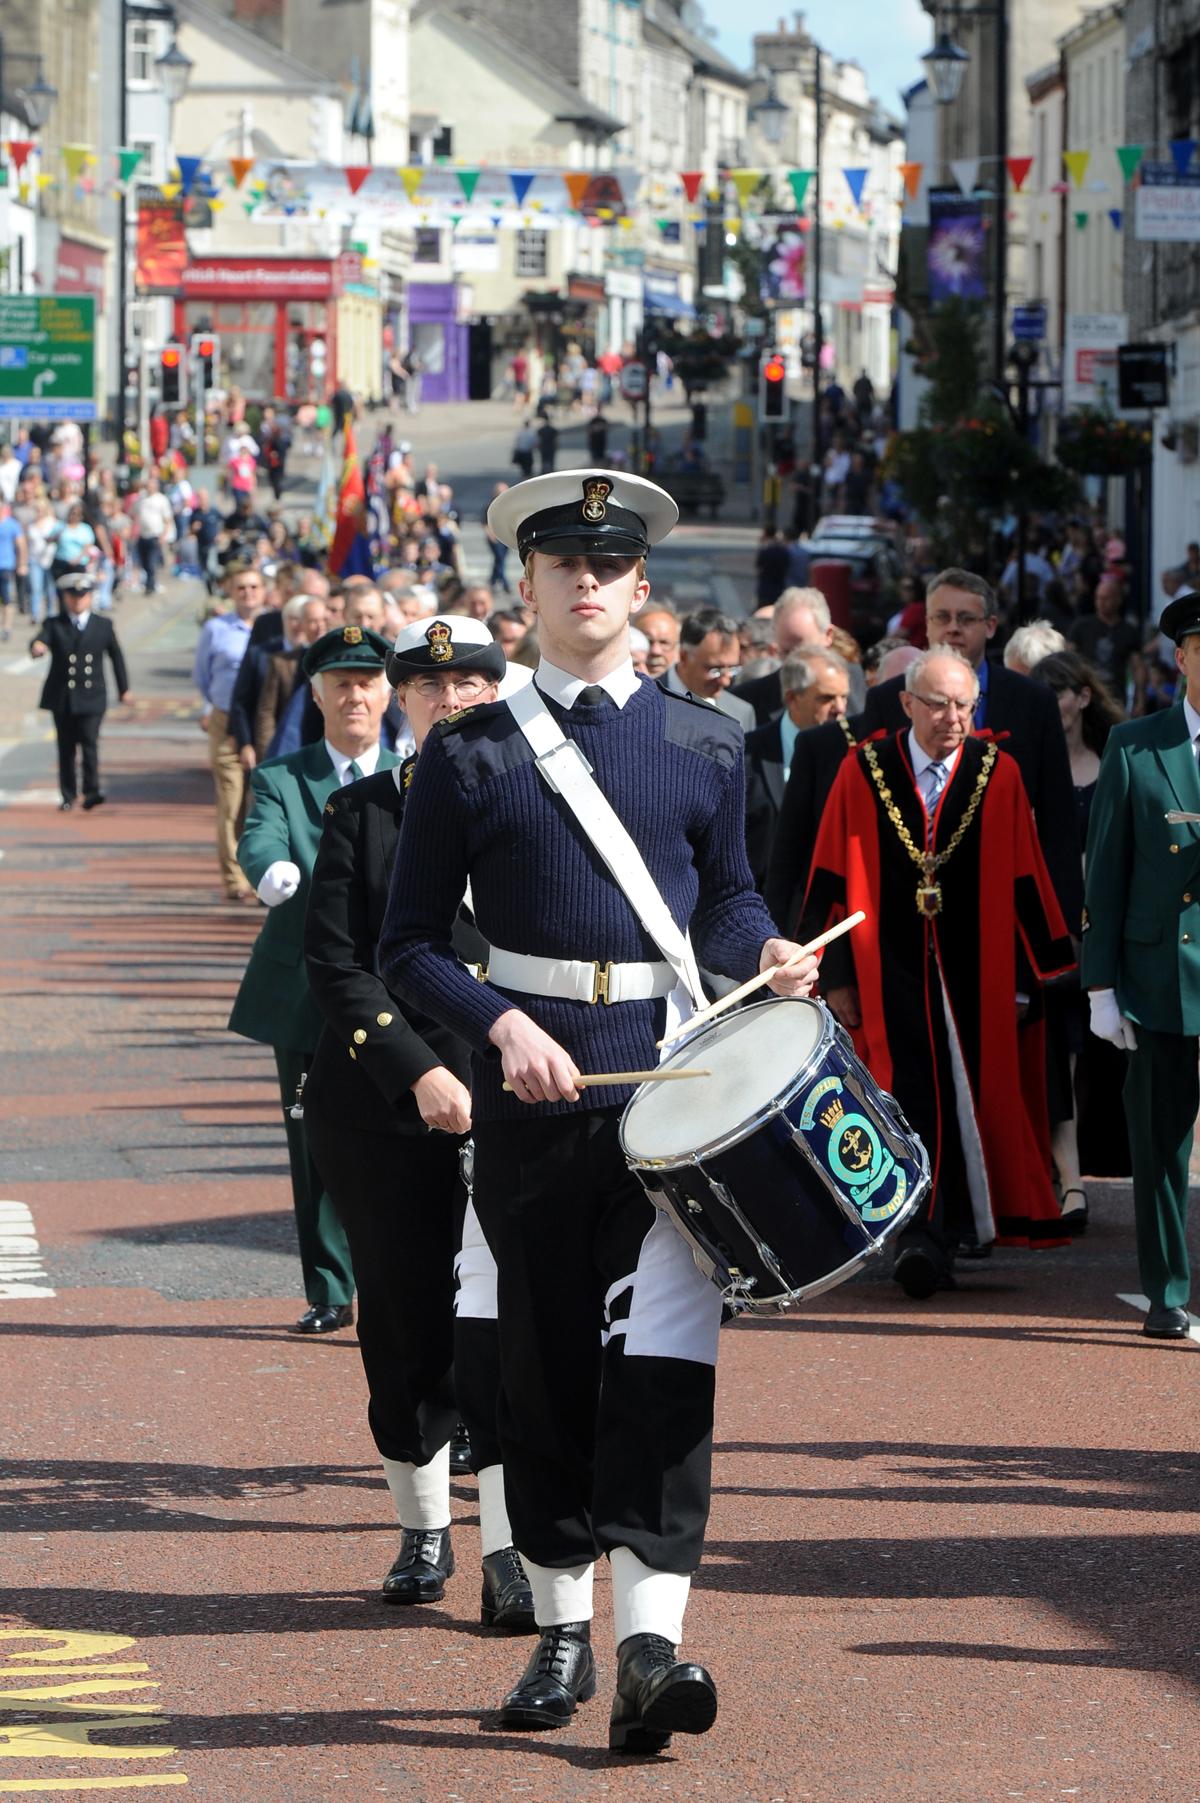 Mayor's Sunday Street parade and service at Kendal parish church.